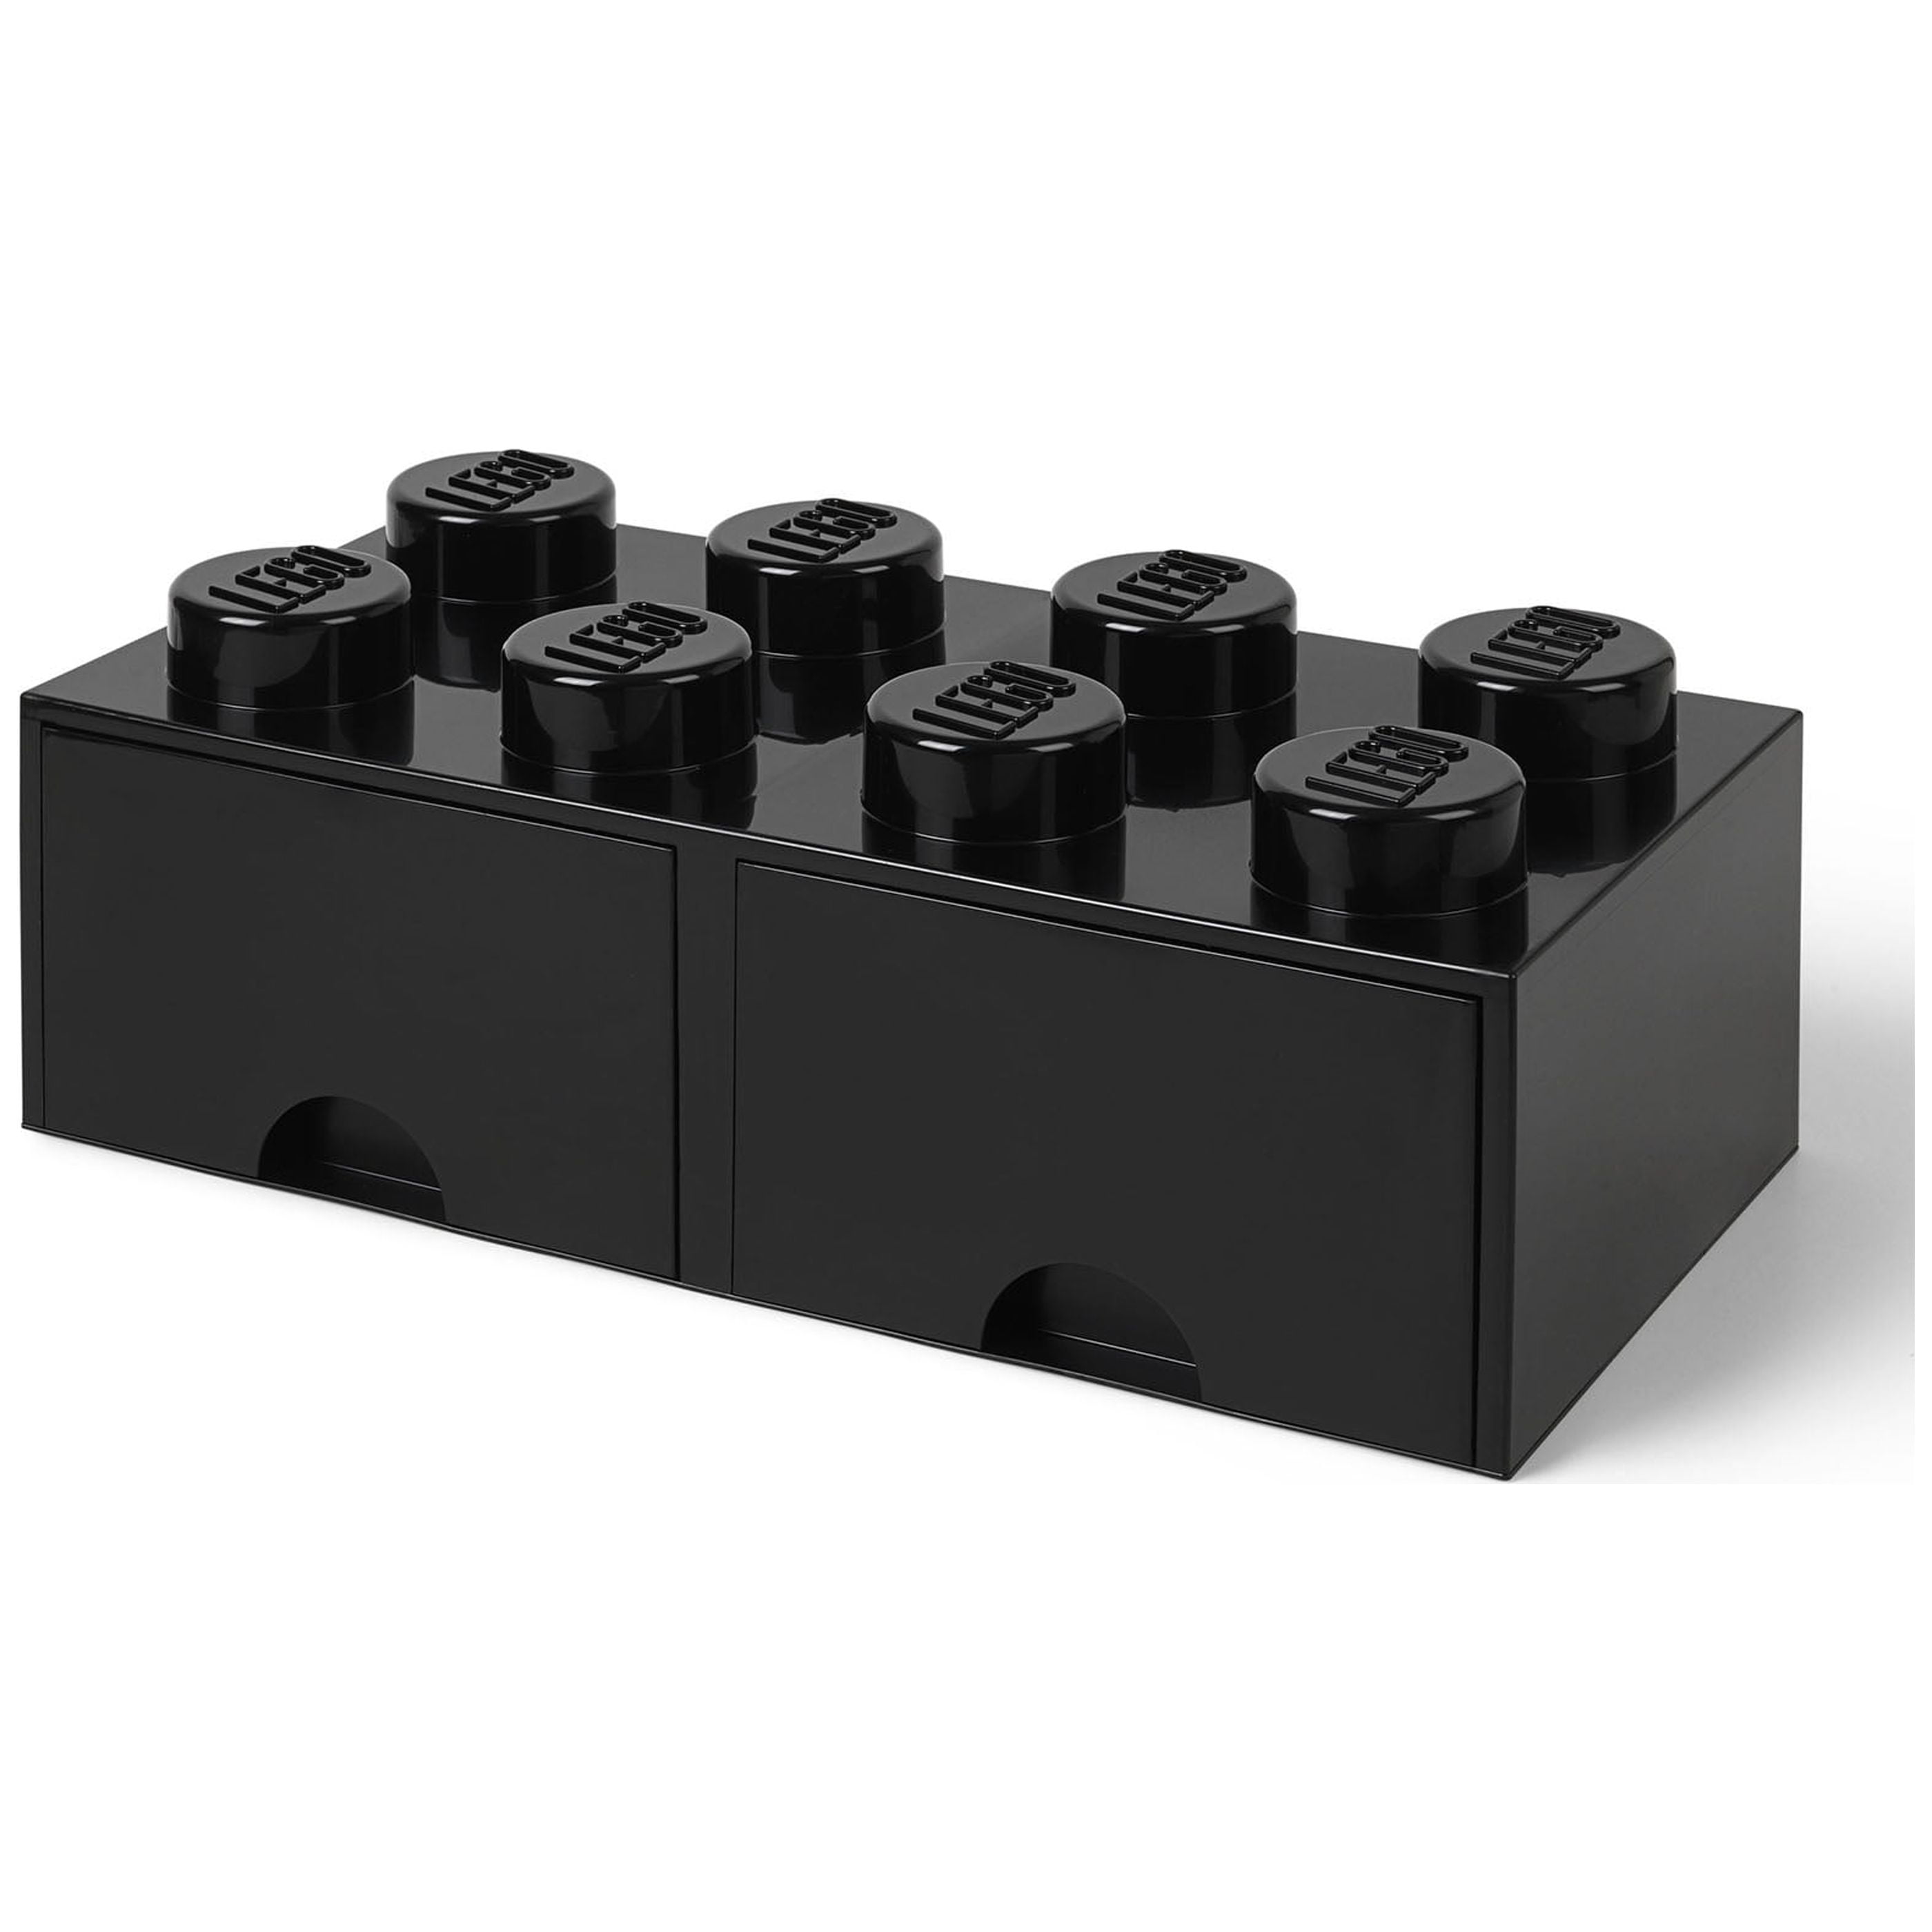 LEGO Storage Brick 8 (2 Drawers) - Bright Yellow 